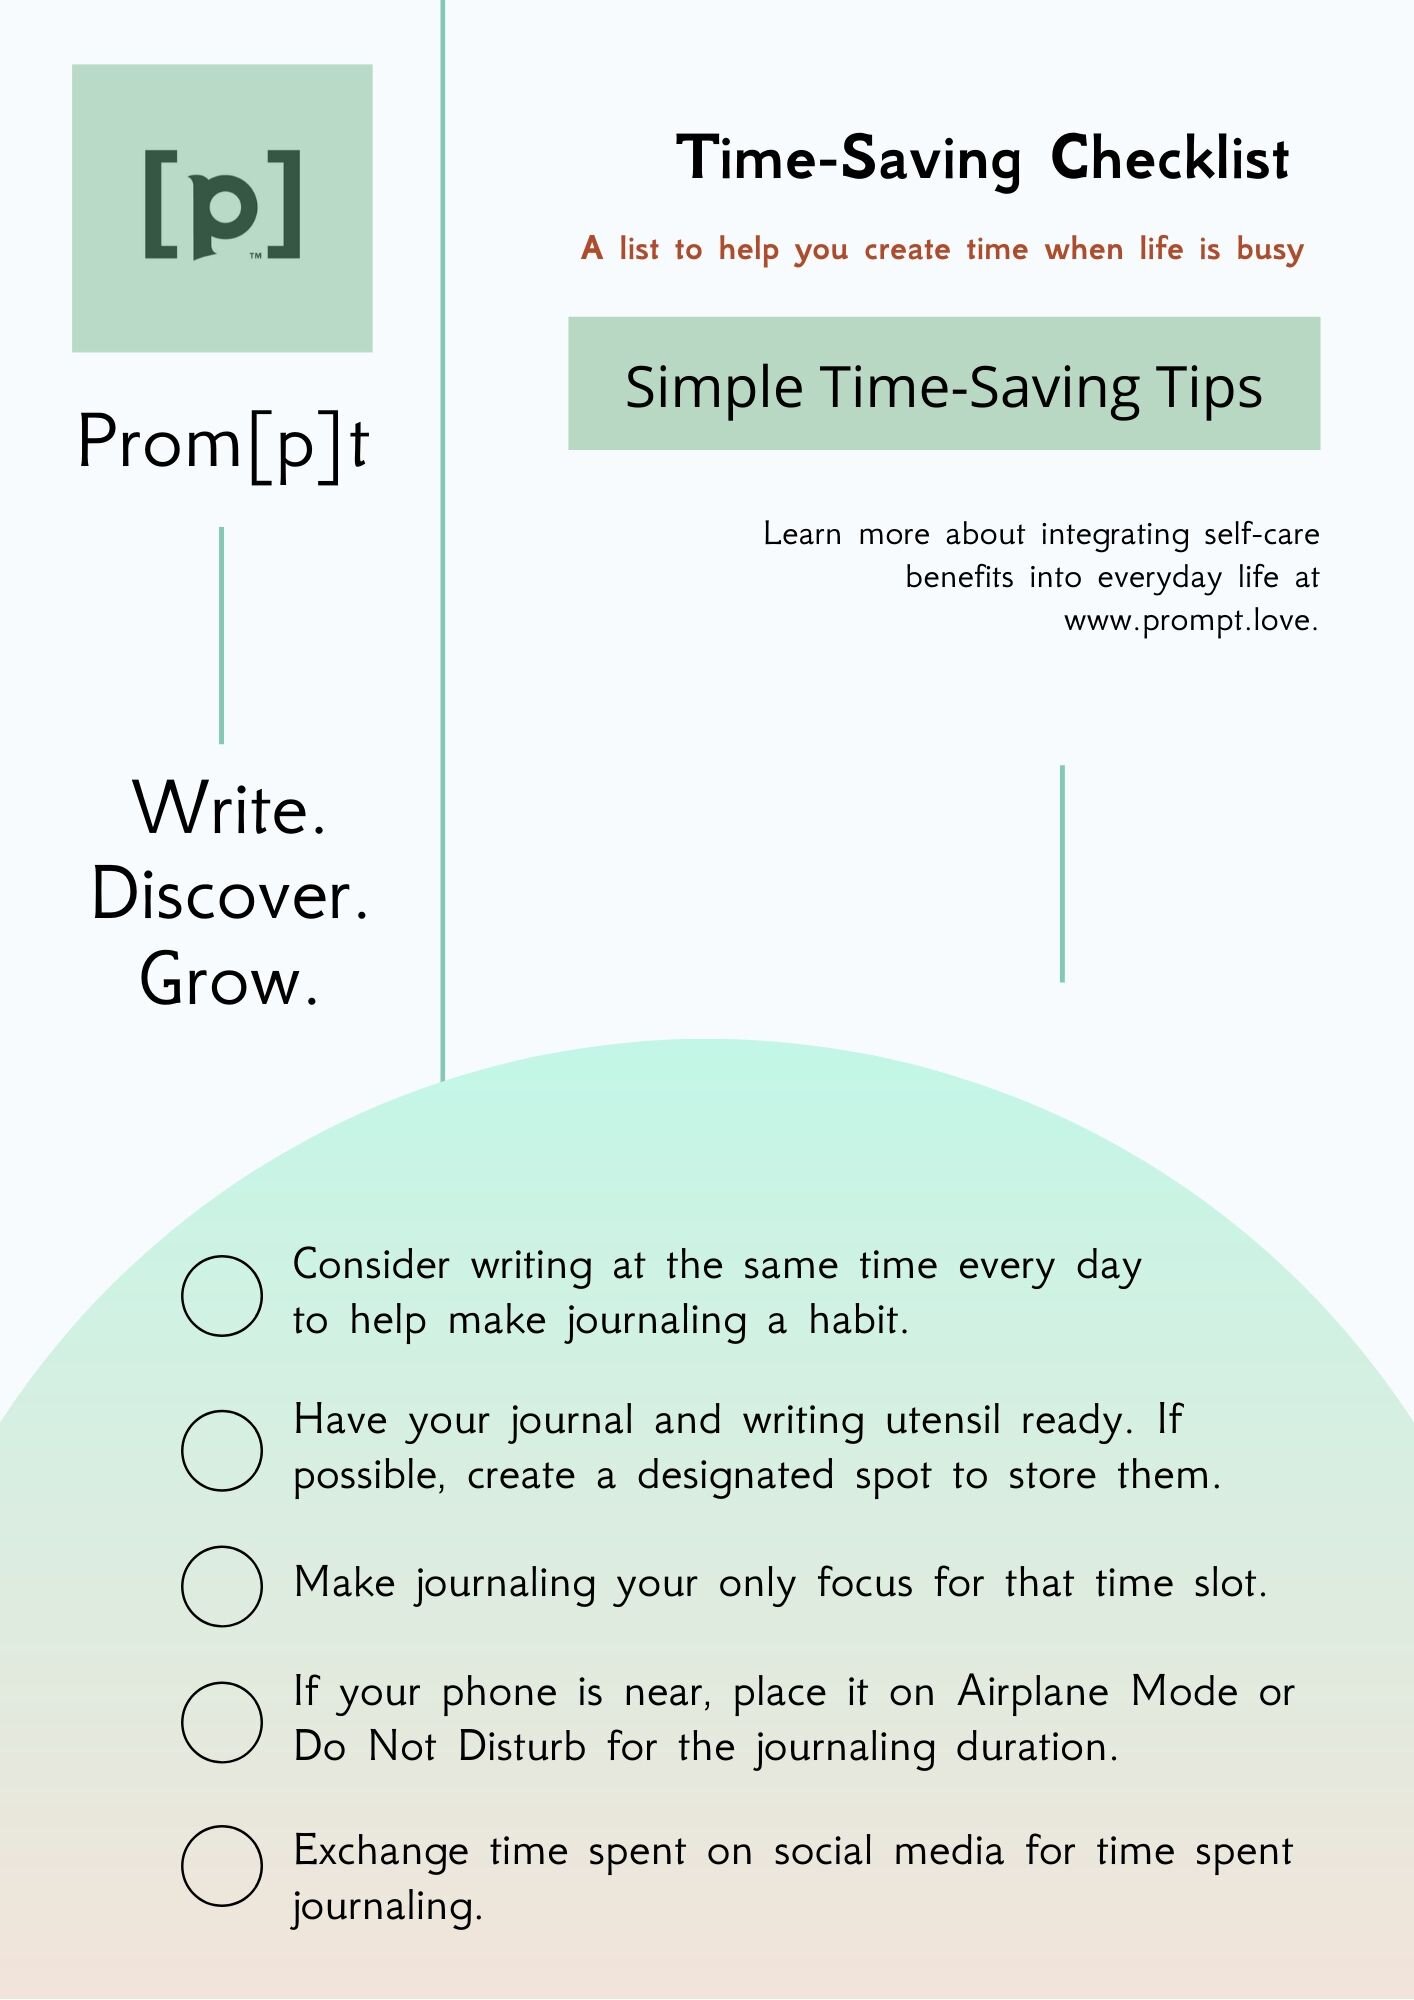 Time-Saving Tips